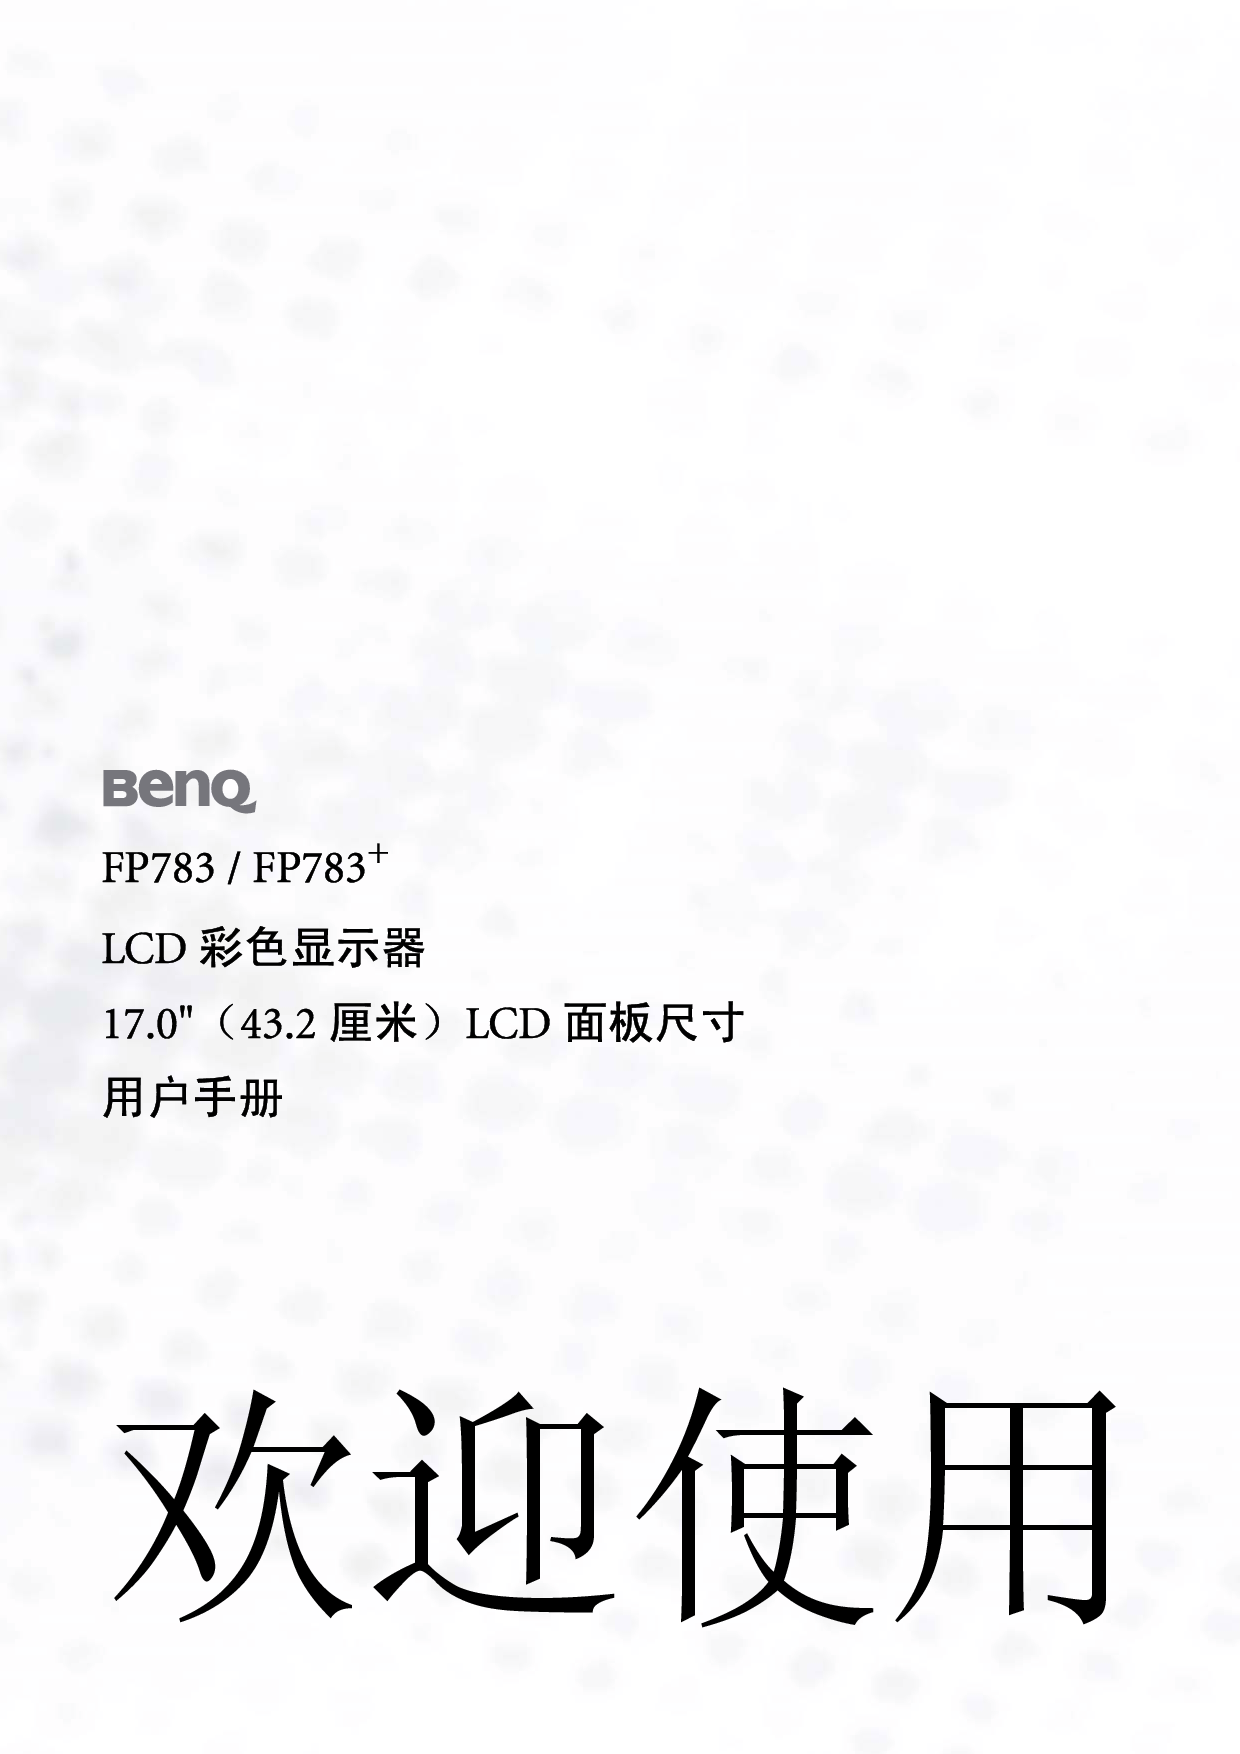 明基 Benq FP783 使用手册 封面